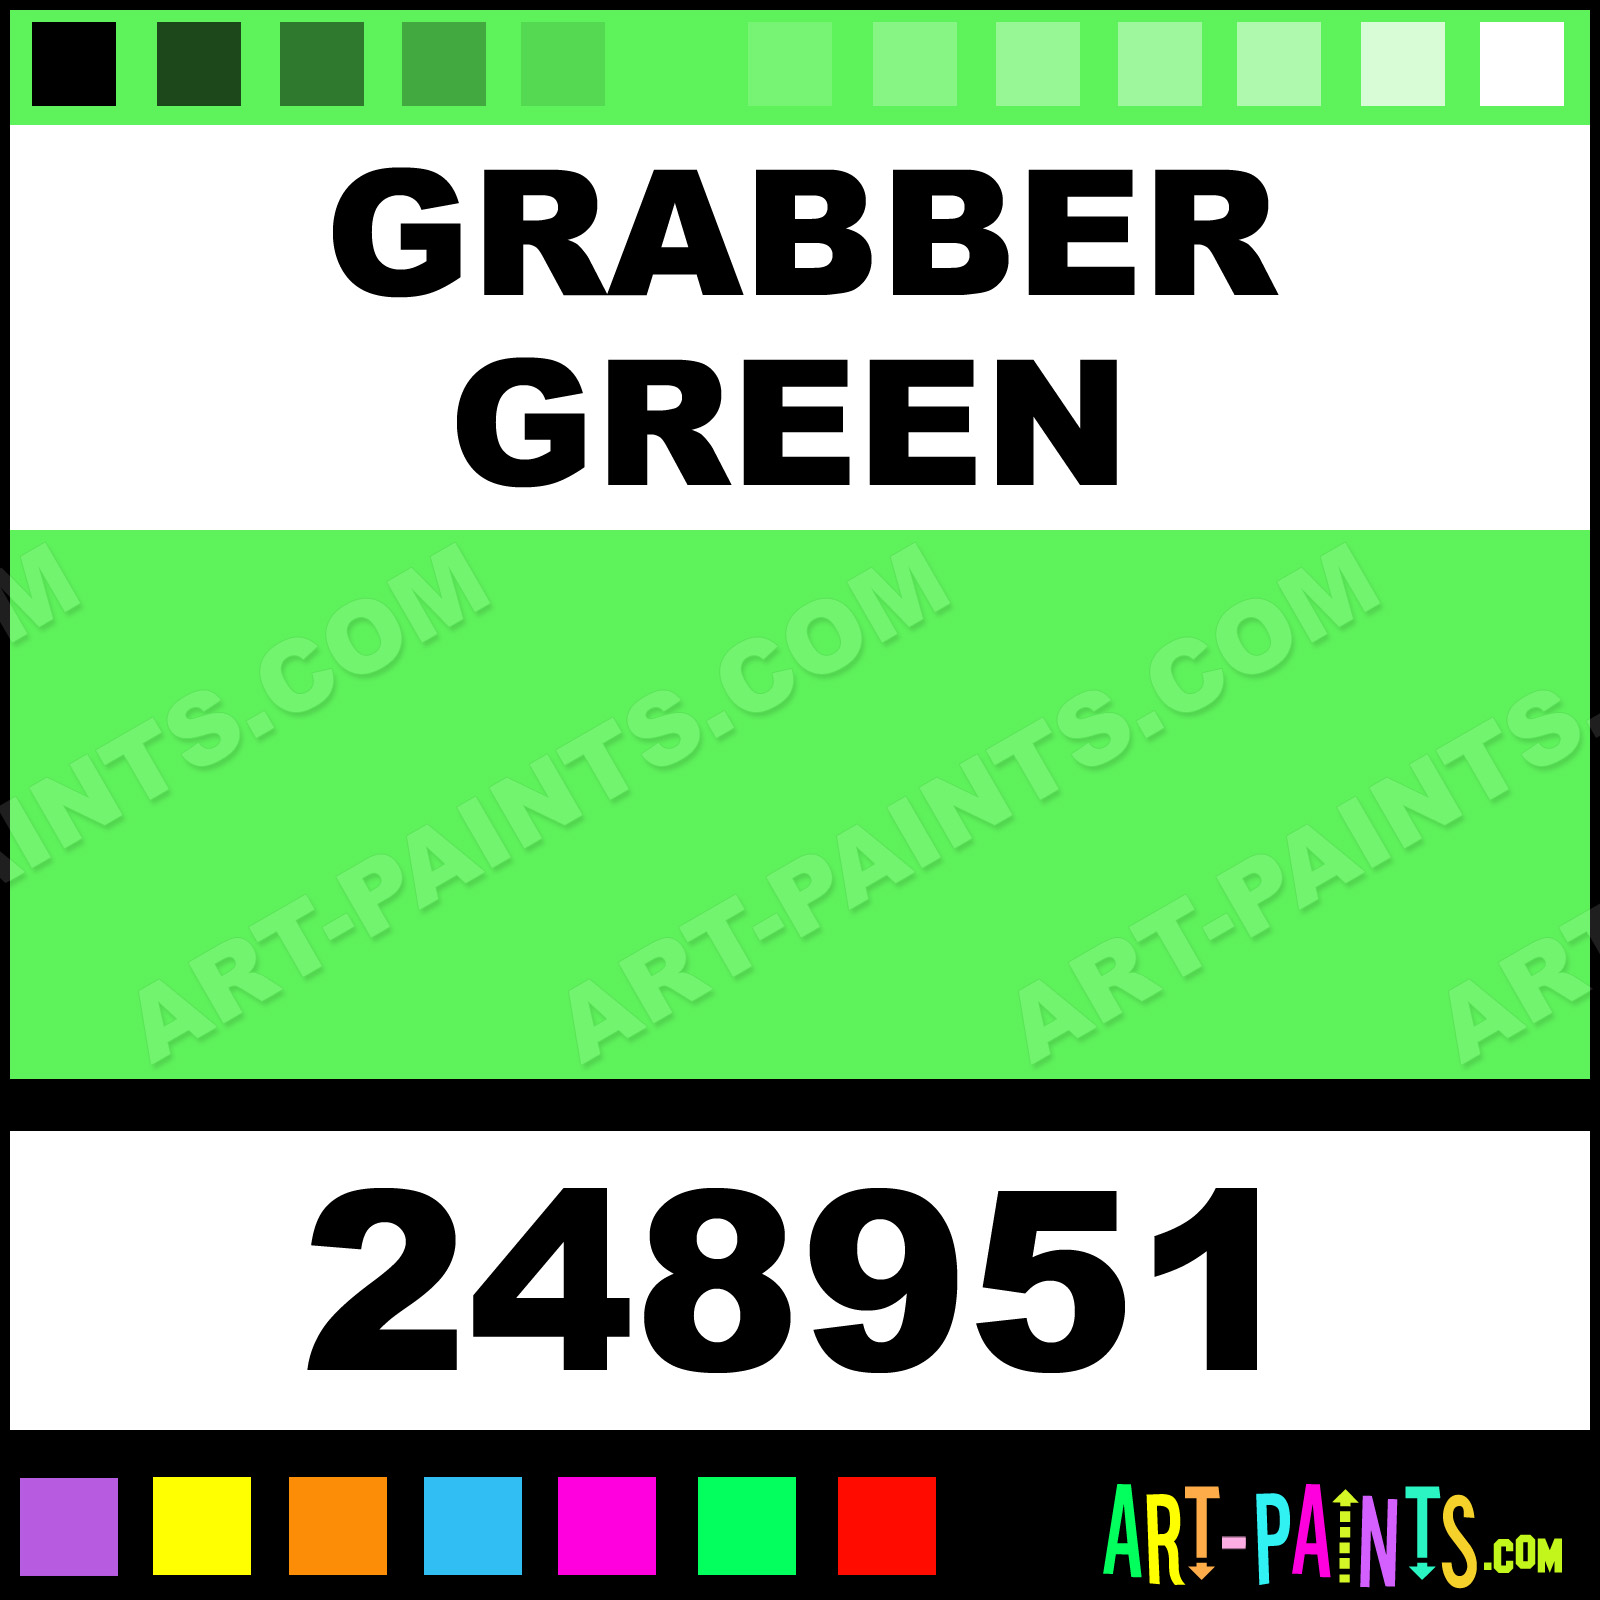 http://www.art-paints.com/Paints/Enamel/Rust-Oleum/Engine-Enamel/Grabber-Green/Grabber-Green-xlg.jpg